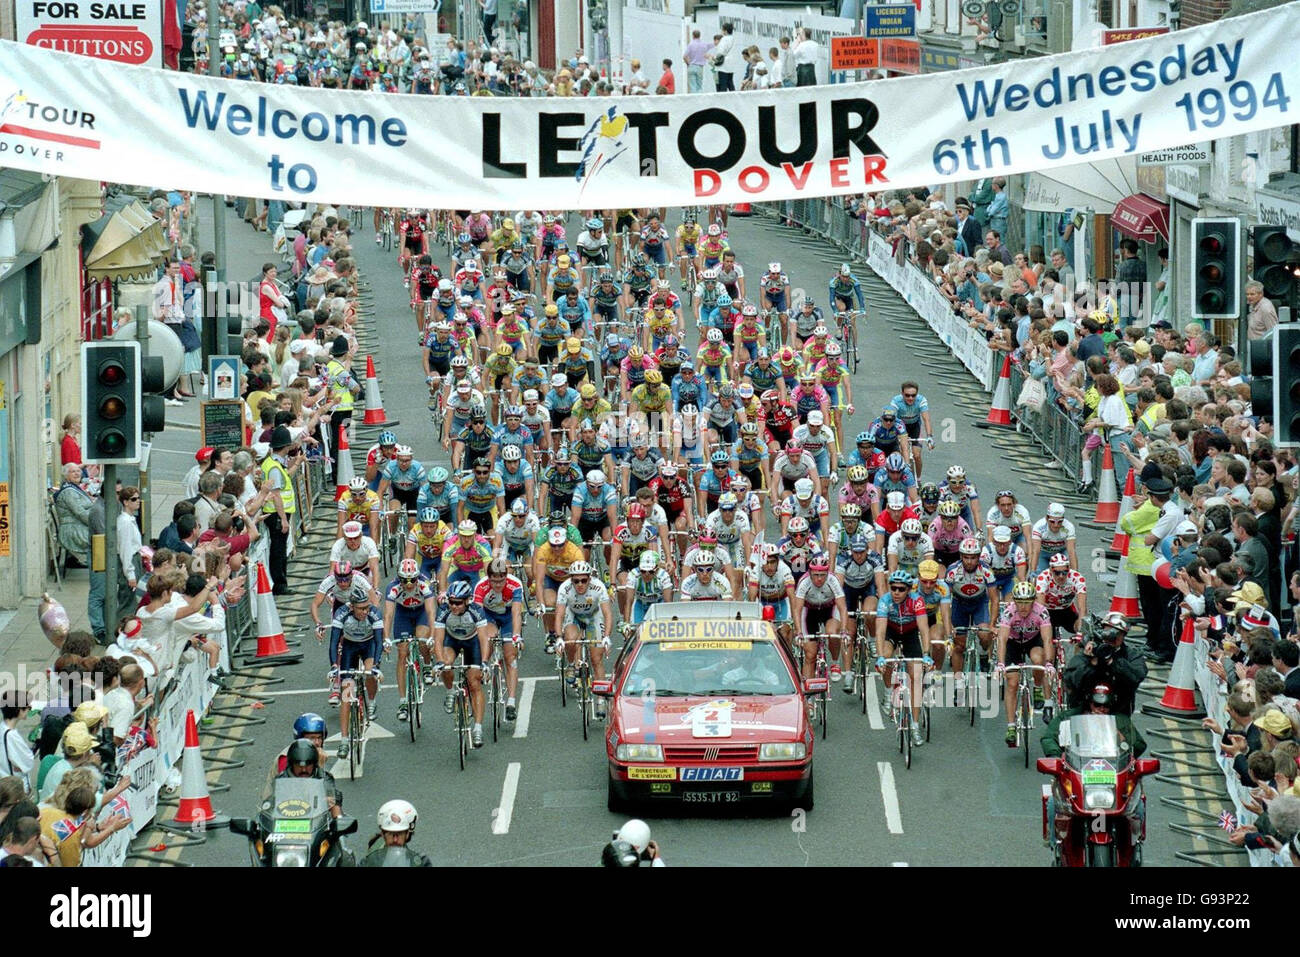 Archivio della biblioteca datato 06/07/1994 di ciclisti che attraversano le strade di dover, Kent all'inizio del le Tour un'escursione di due giorni del Tour de France in Inghilterra. Londra ospiterà l'inizio del Tour de France 2007, è stato confermato oggi, Martedì 24 gennaio 2006. La gara, che ha attirato circa tre milioni di spettatori sulla sua ultima apparizione sulle strade inglesi, visiterà il Regno Unito solo per la terza volta nella sua storia di 103 anni. Visita il tour CICLISTICO della storia della Pennsylvania. PREMERE ASSOCIAZIONE foto. Il credito fotografico dovrebbe essere: Martin Keene/PA. Foto Stock